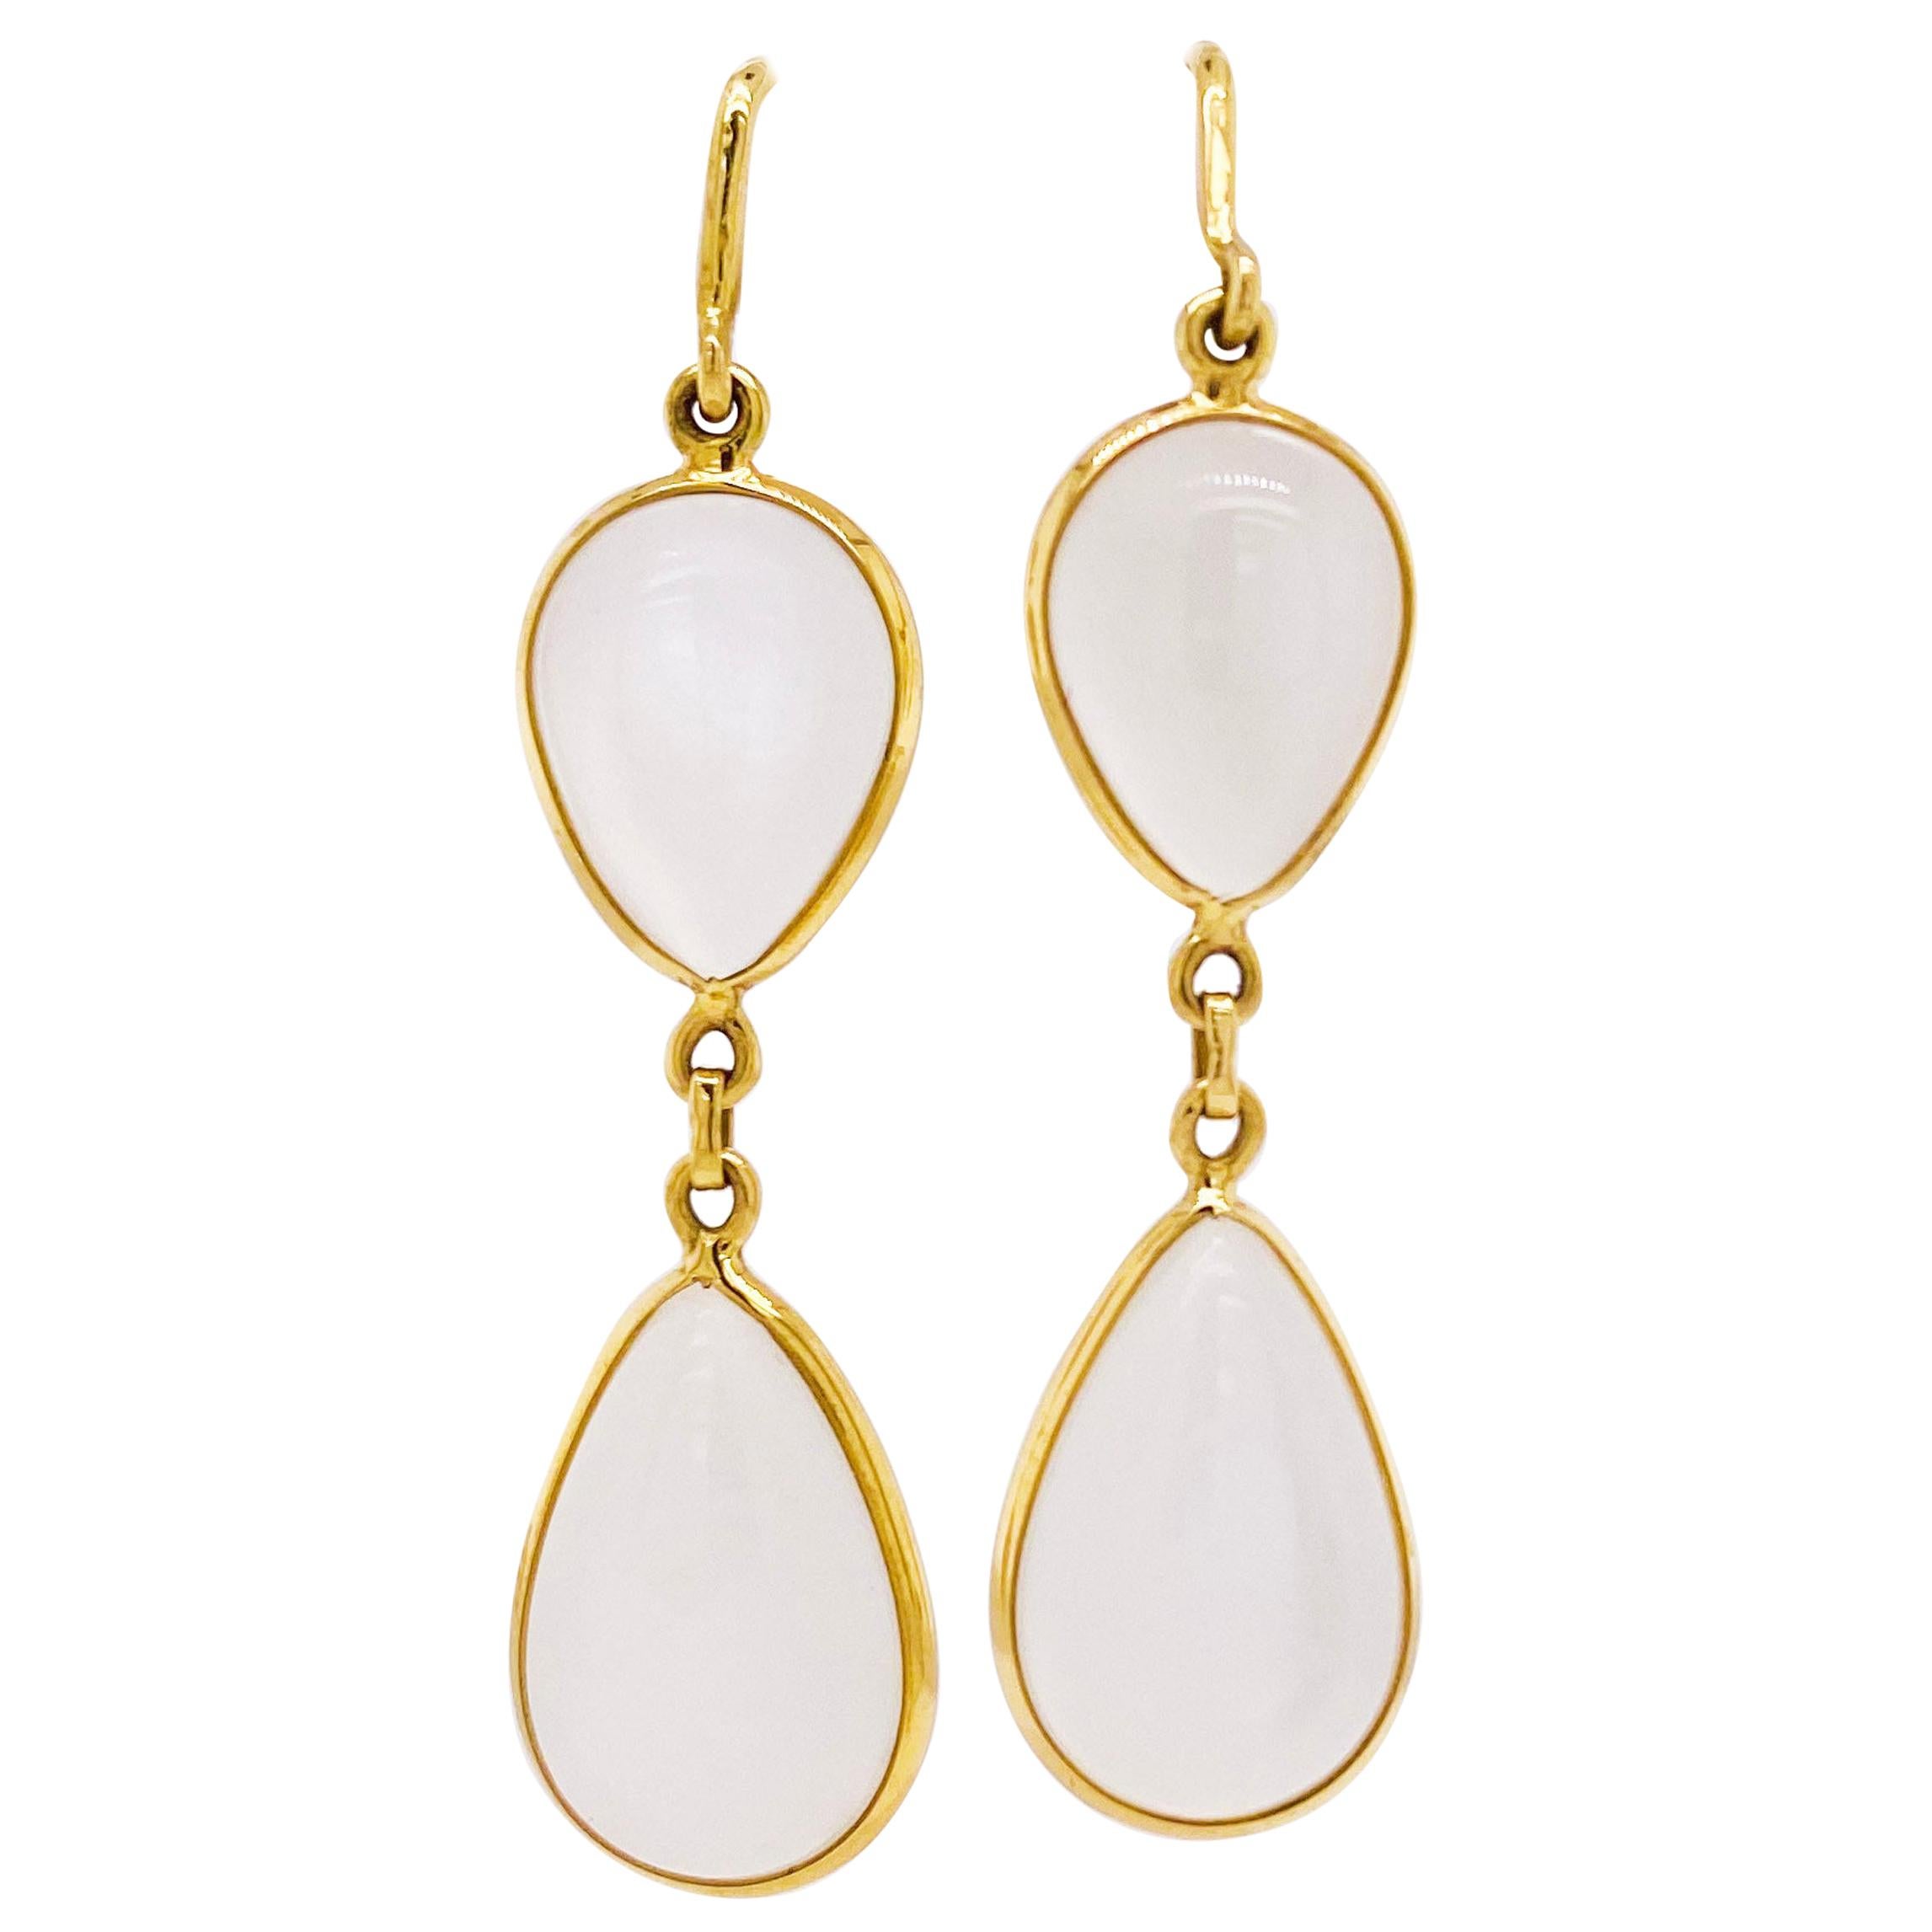 Moonstone Earrings, 18 Karat Yellow Gold, Dangle Earrings, Pear